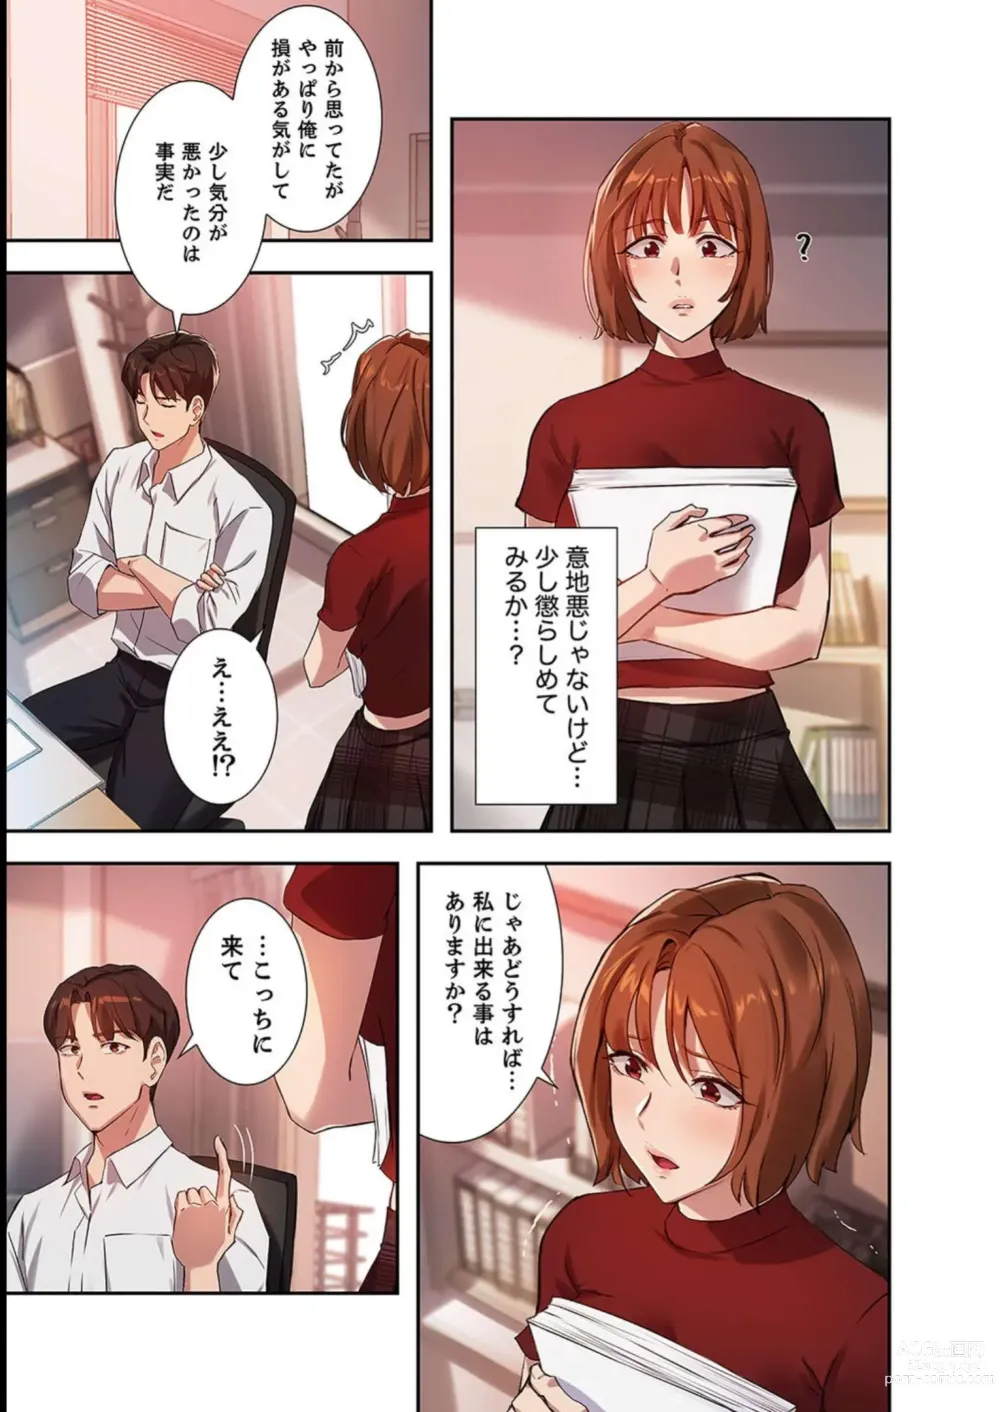 Page 113 of manga Hatachi 03